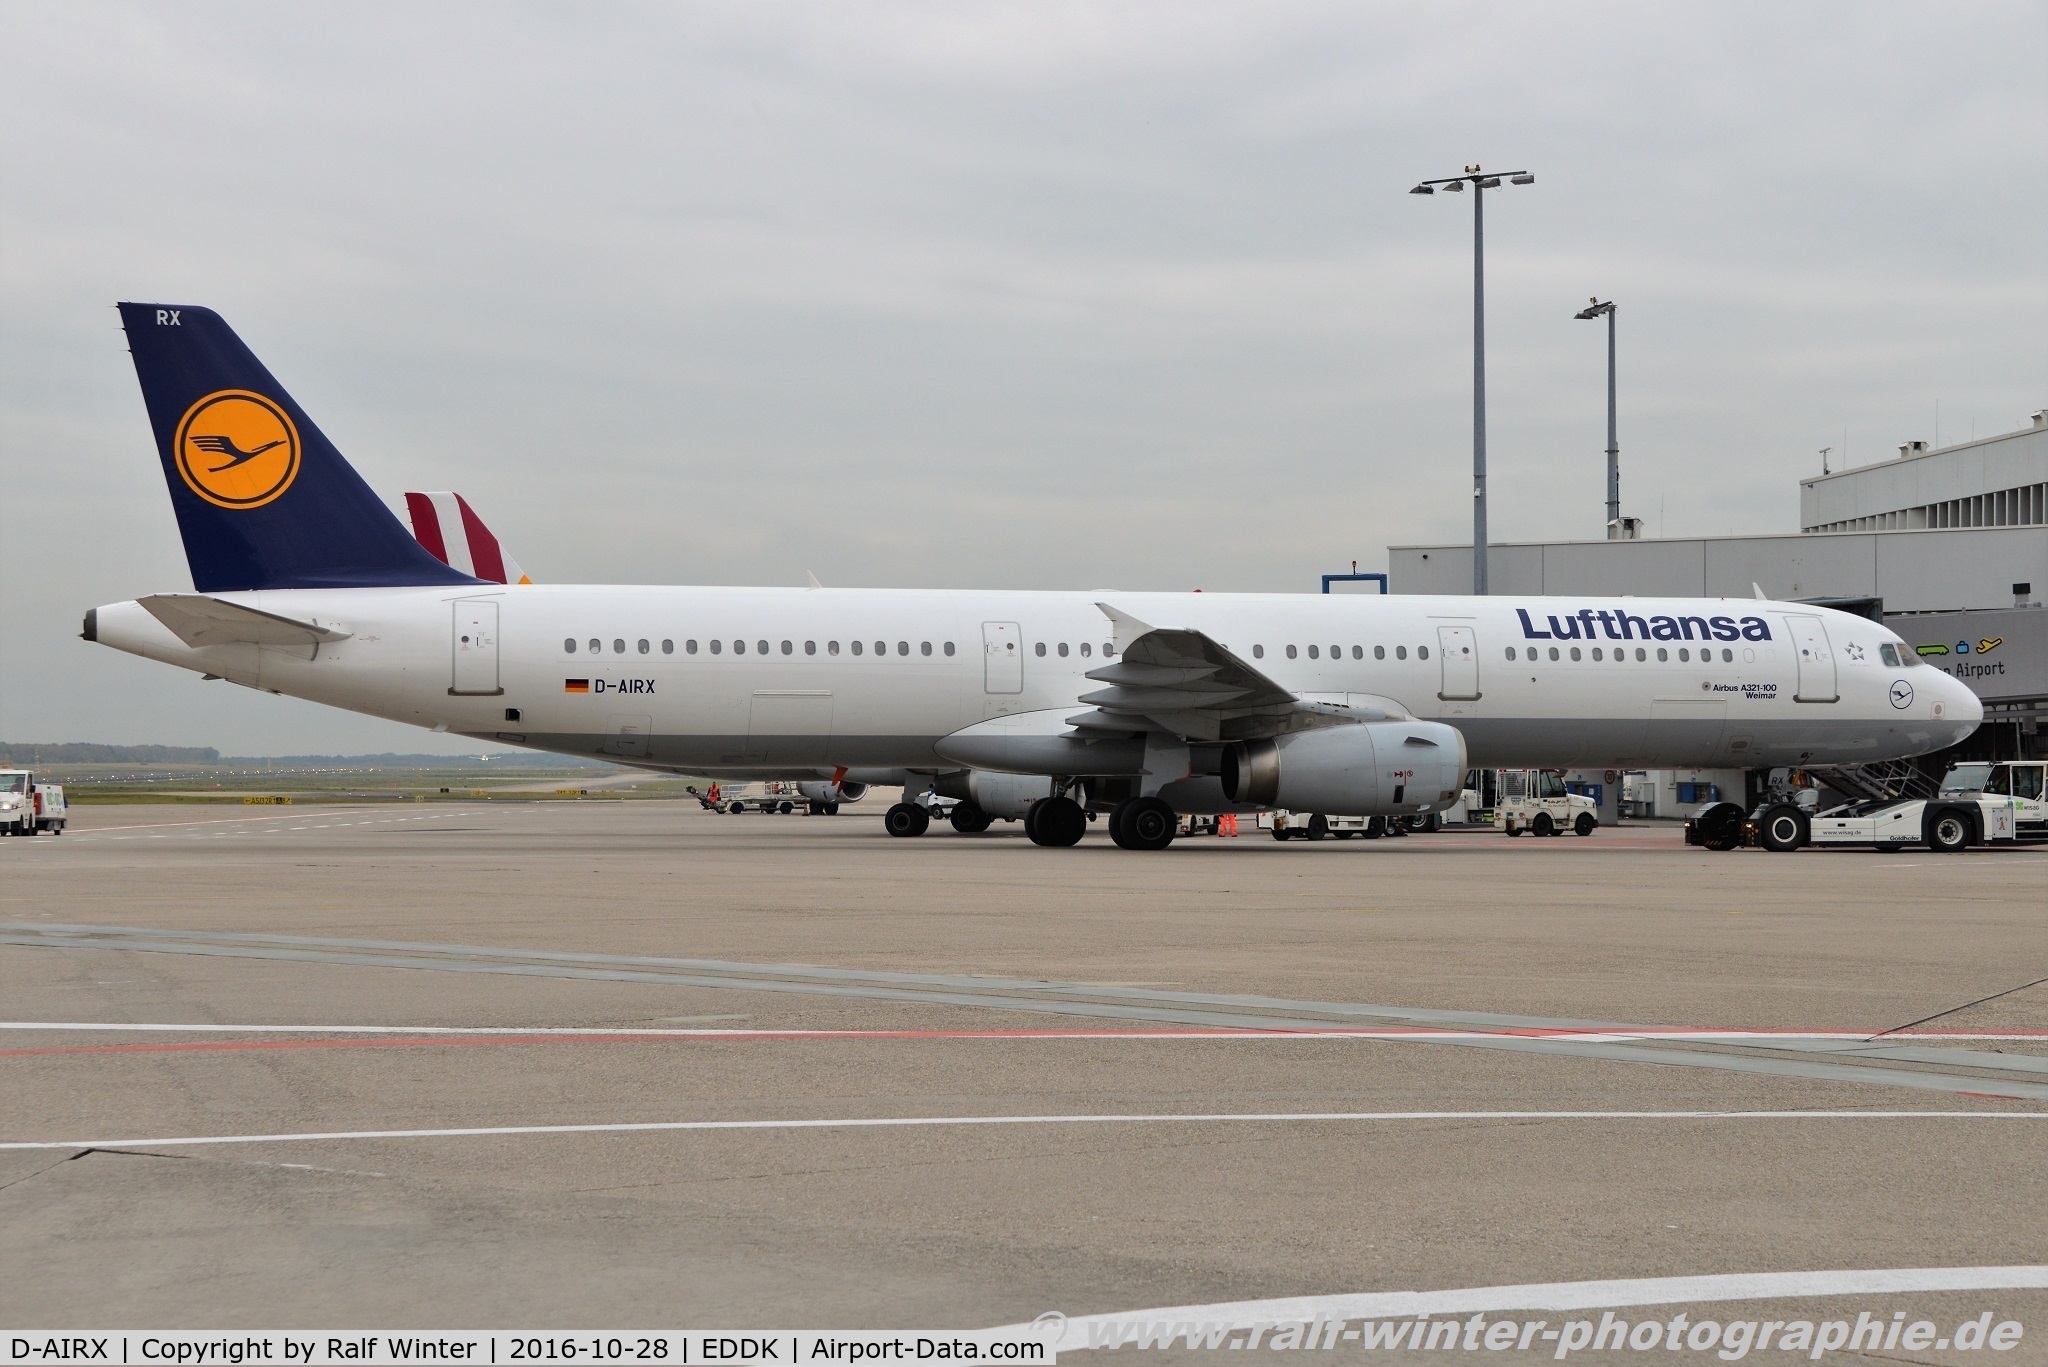 D-AIRX, 1998 Airbus A321-131 C/N 0887, Airbus A321-131 - LH DLH Lufthansa 'Weimar' - 887 - D-AIRX - 28.10.2016 - CGN